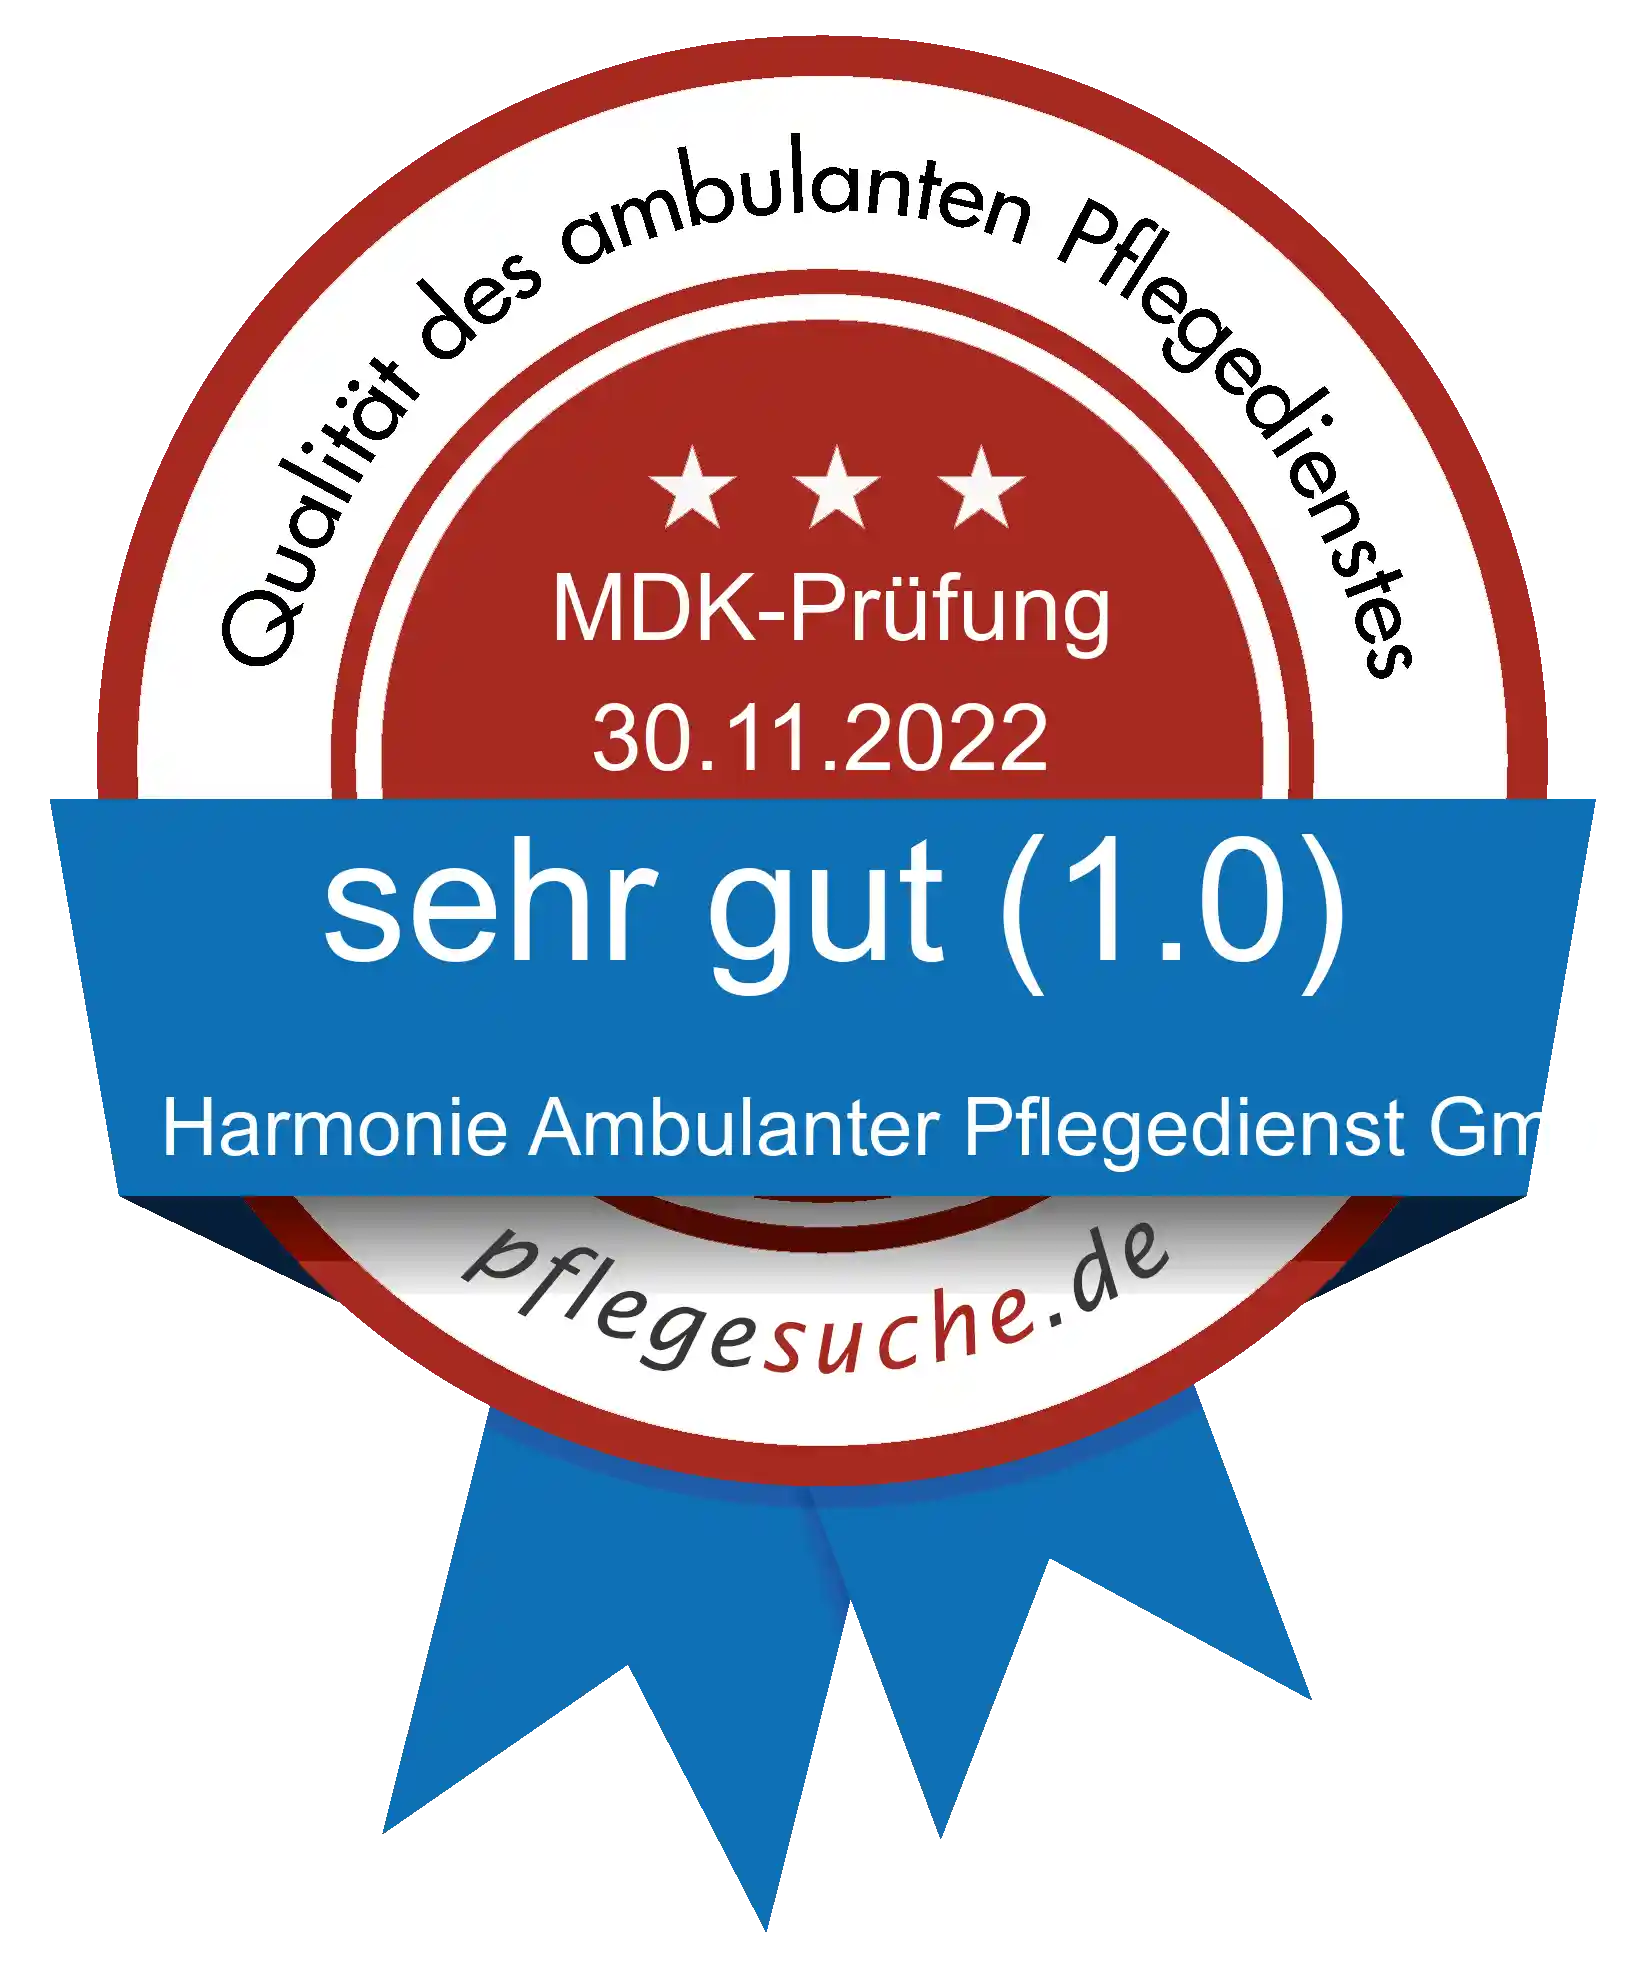 Siegel Benotung: Harmonie Ambulanter Pflegedienst GmbH